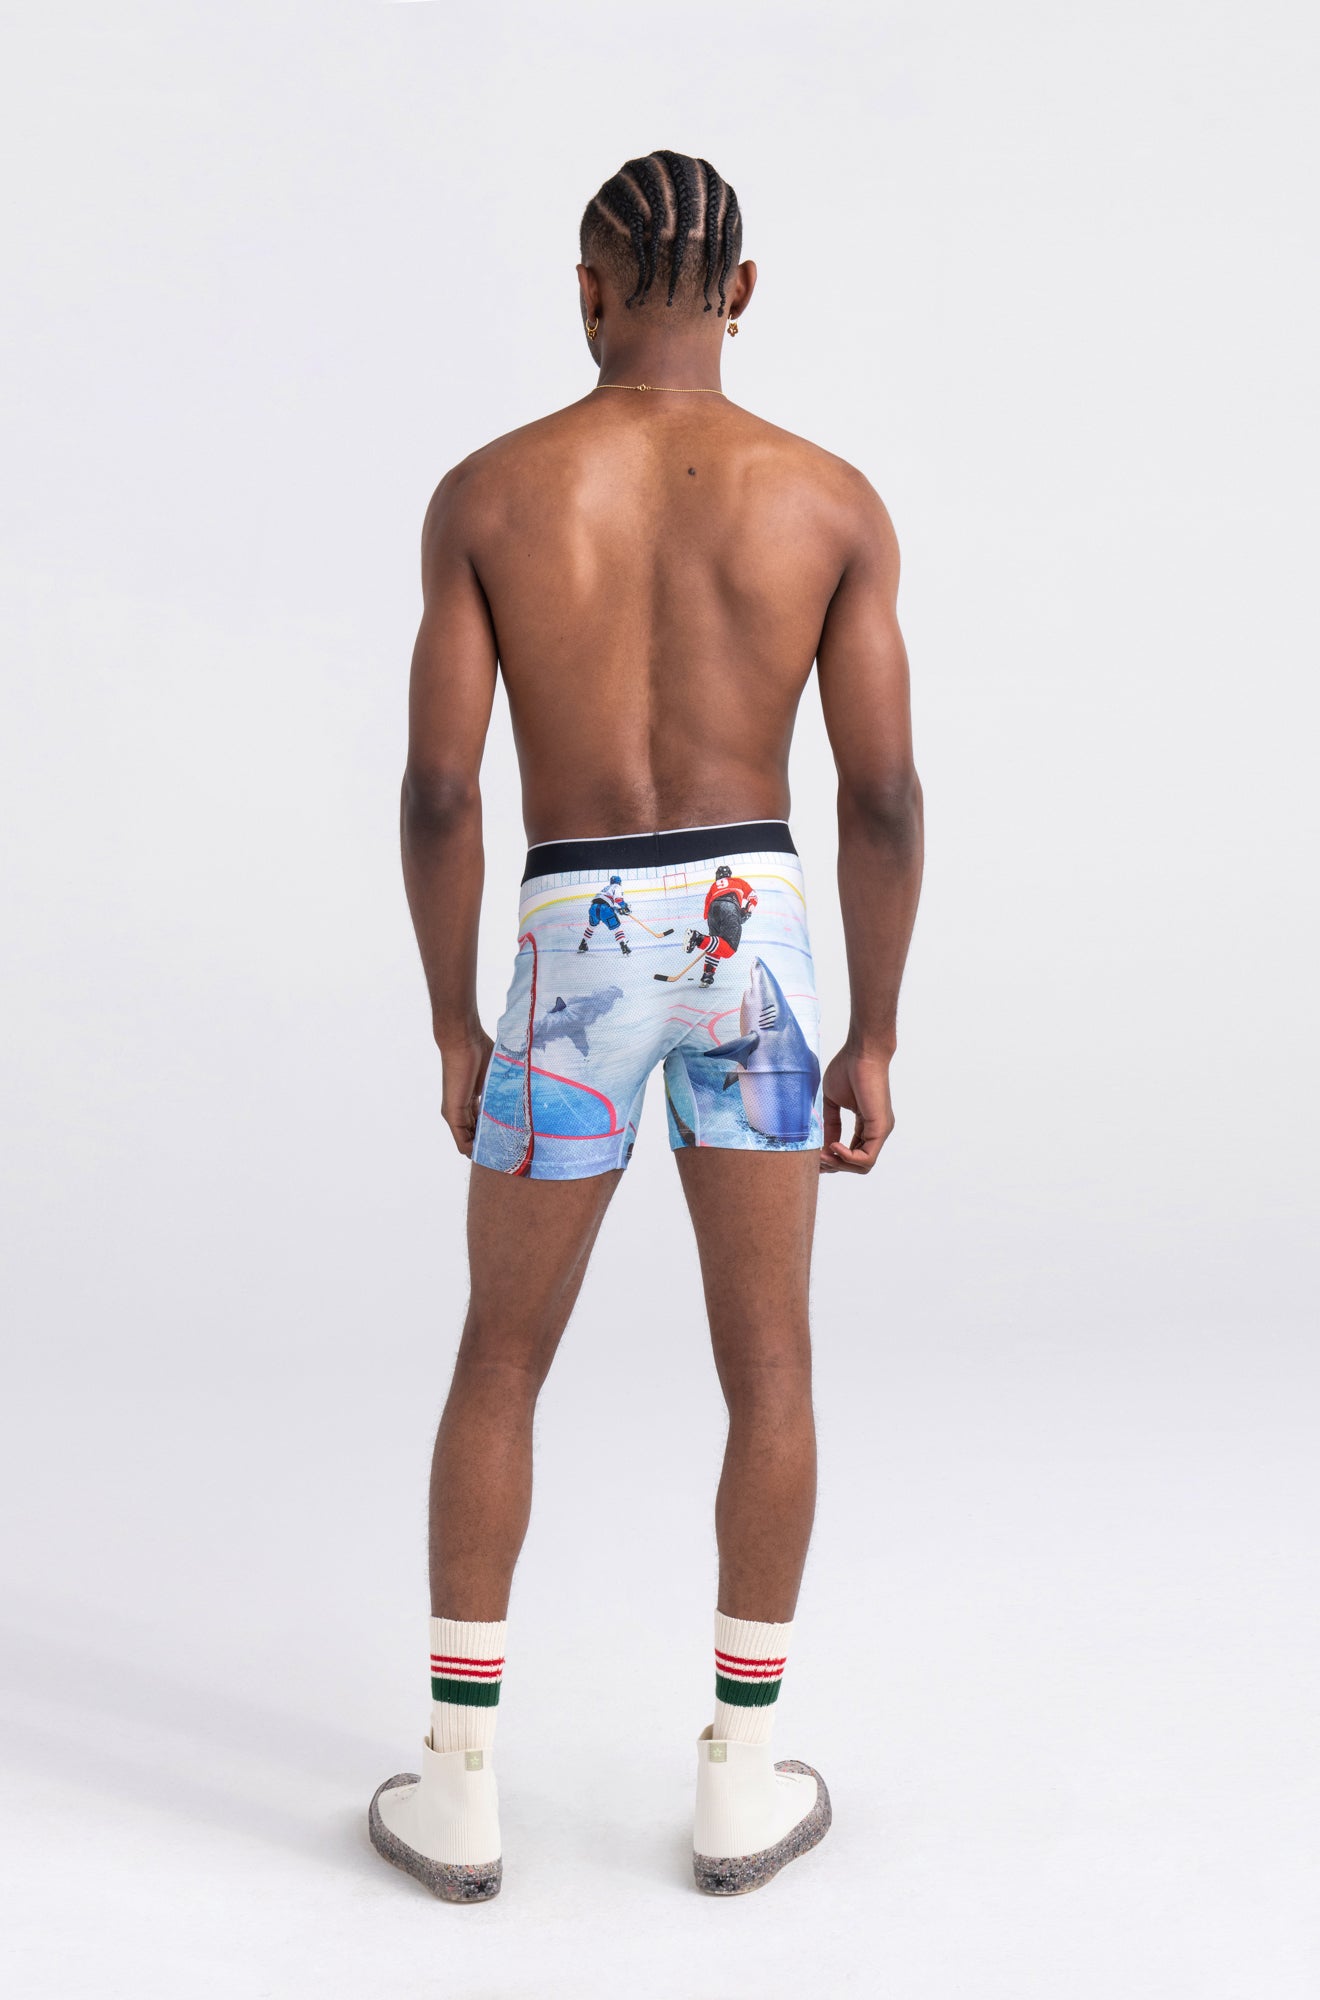 Sous-vêtement/boxer pour homme par Saxx | SXBB29 ENF | Machemise.ca, vêtements mode pour hommes